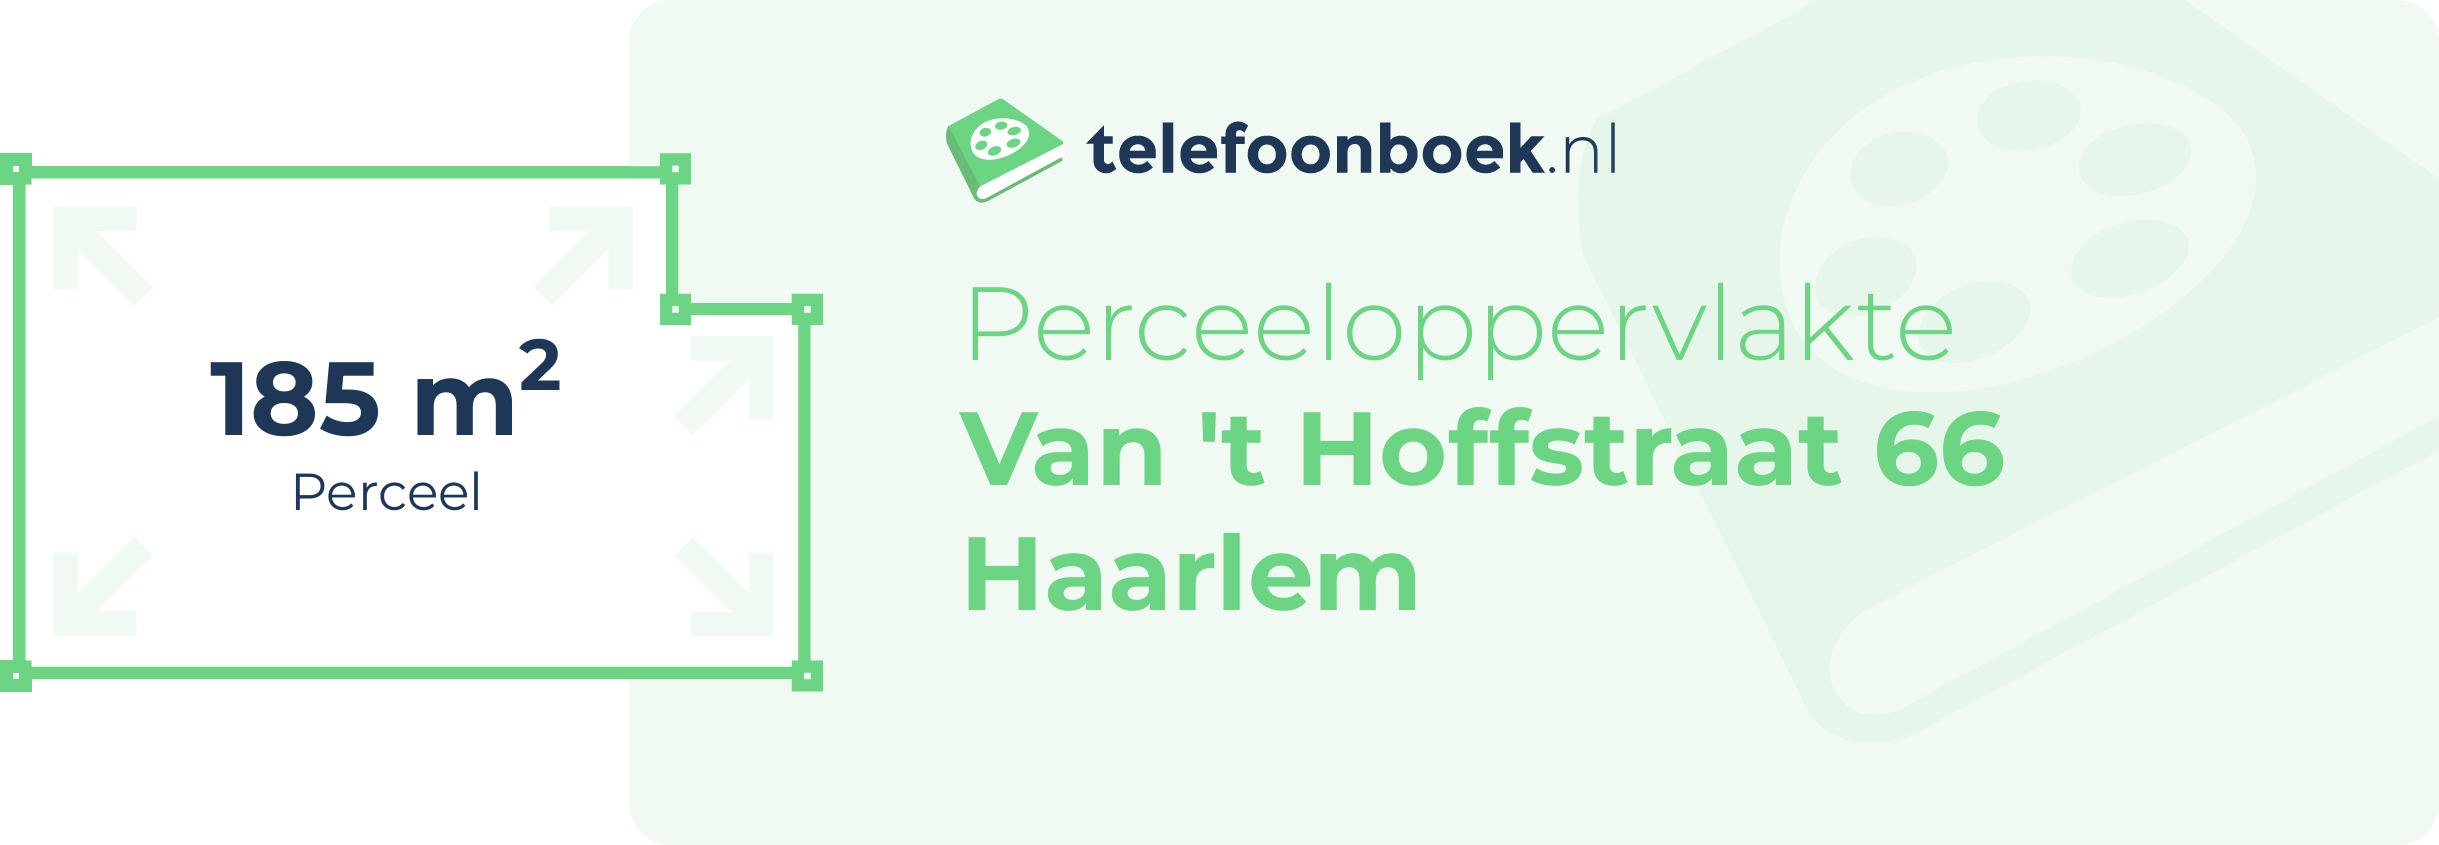 Perceeloppervlakte Van 't Hoffstraat 66 Haarlem